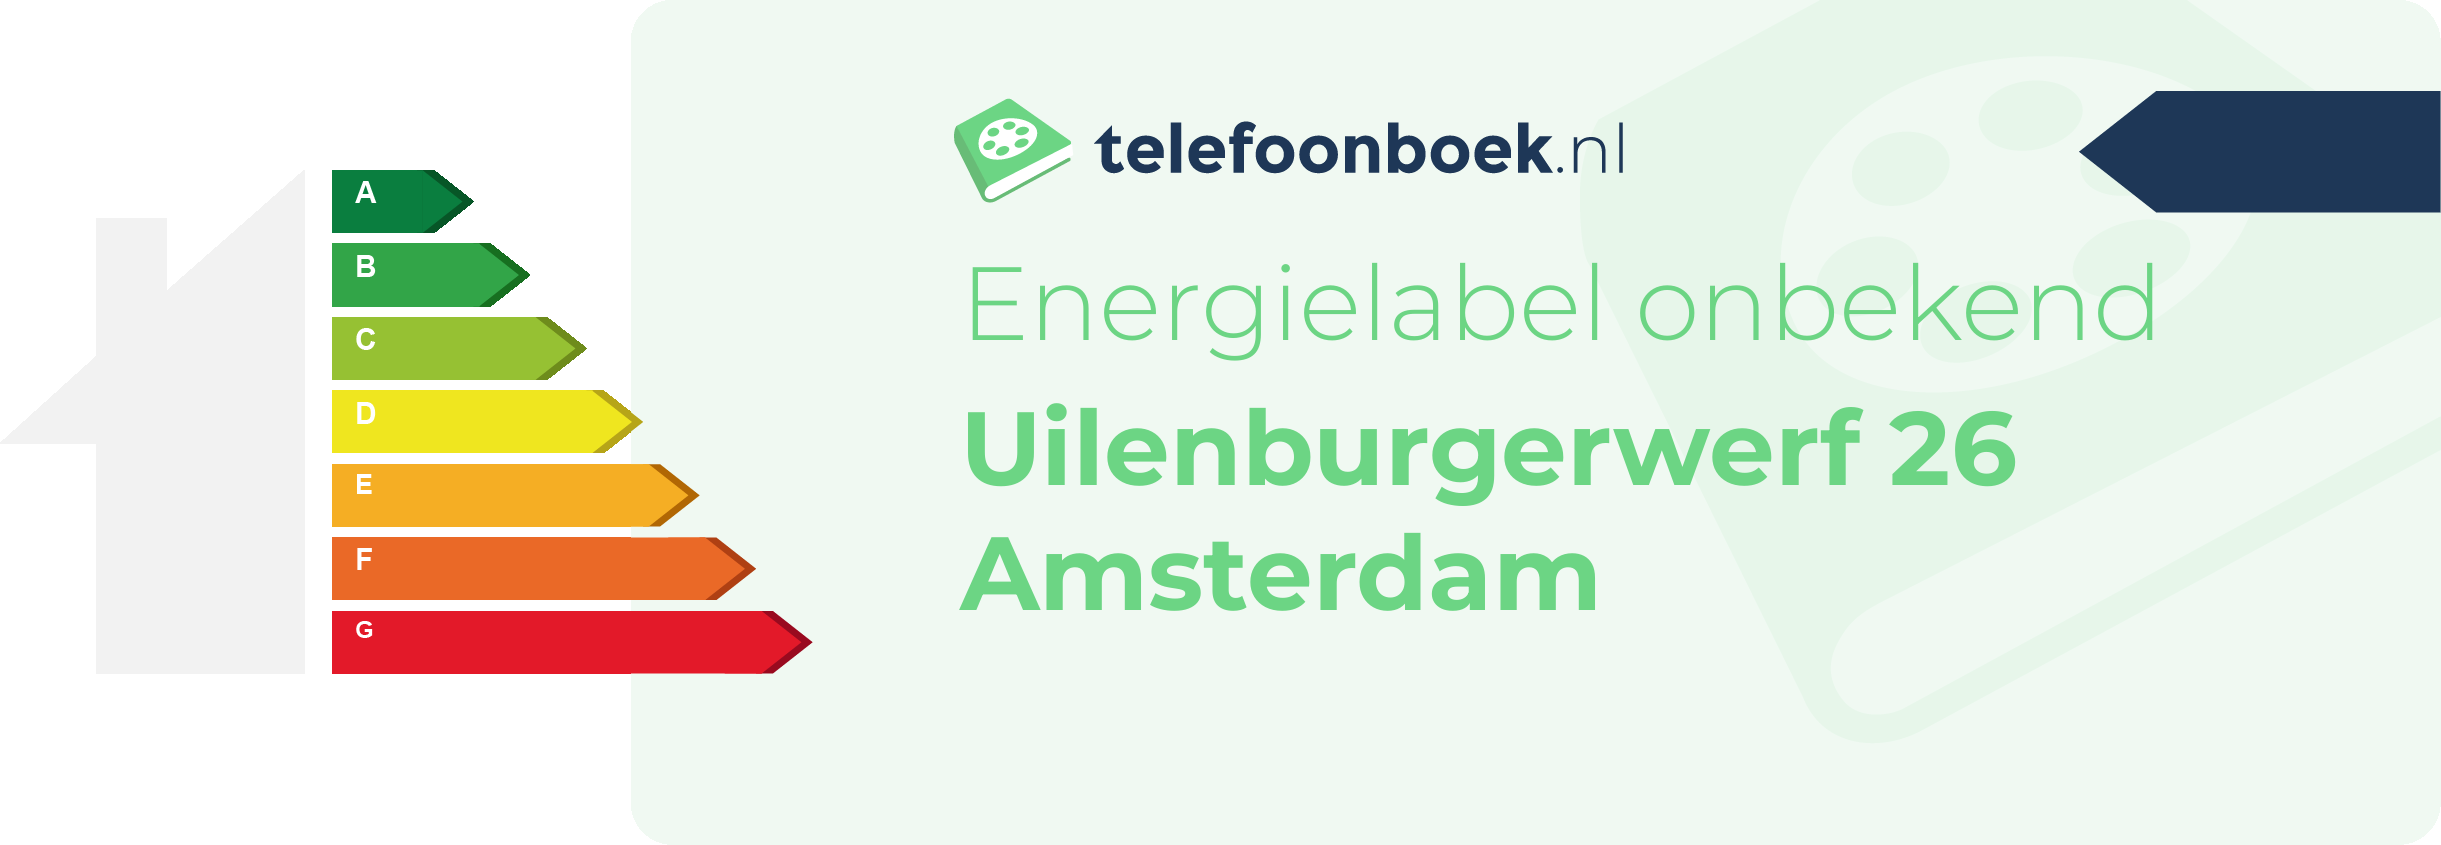 Energielabel Uilenburgerwerf 26 Amsterdam